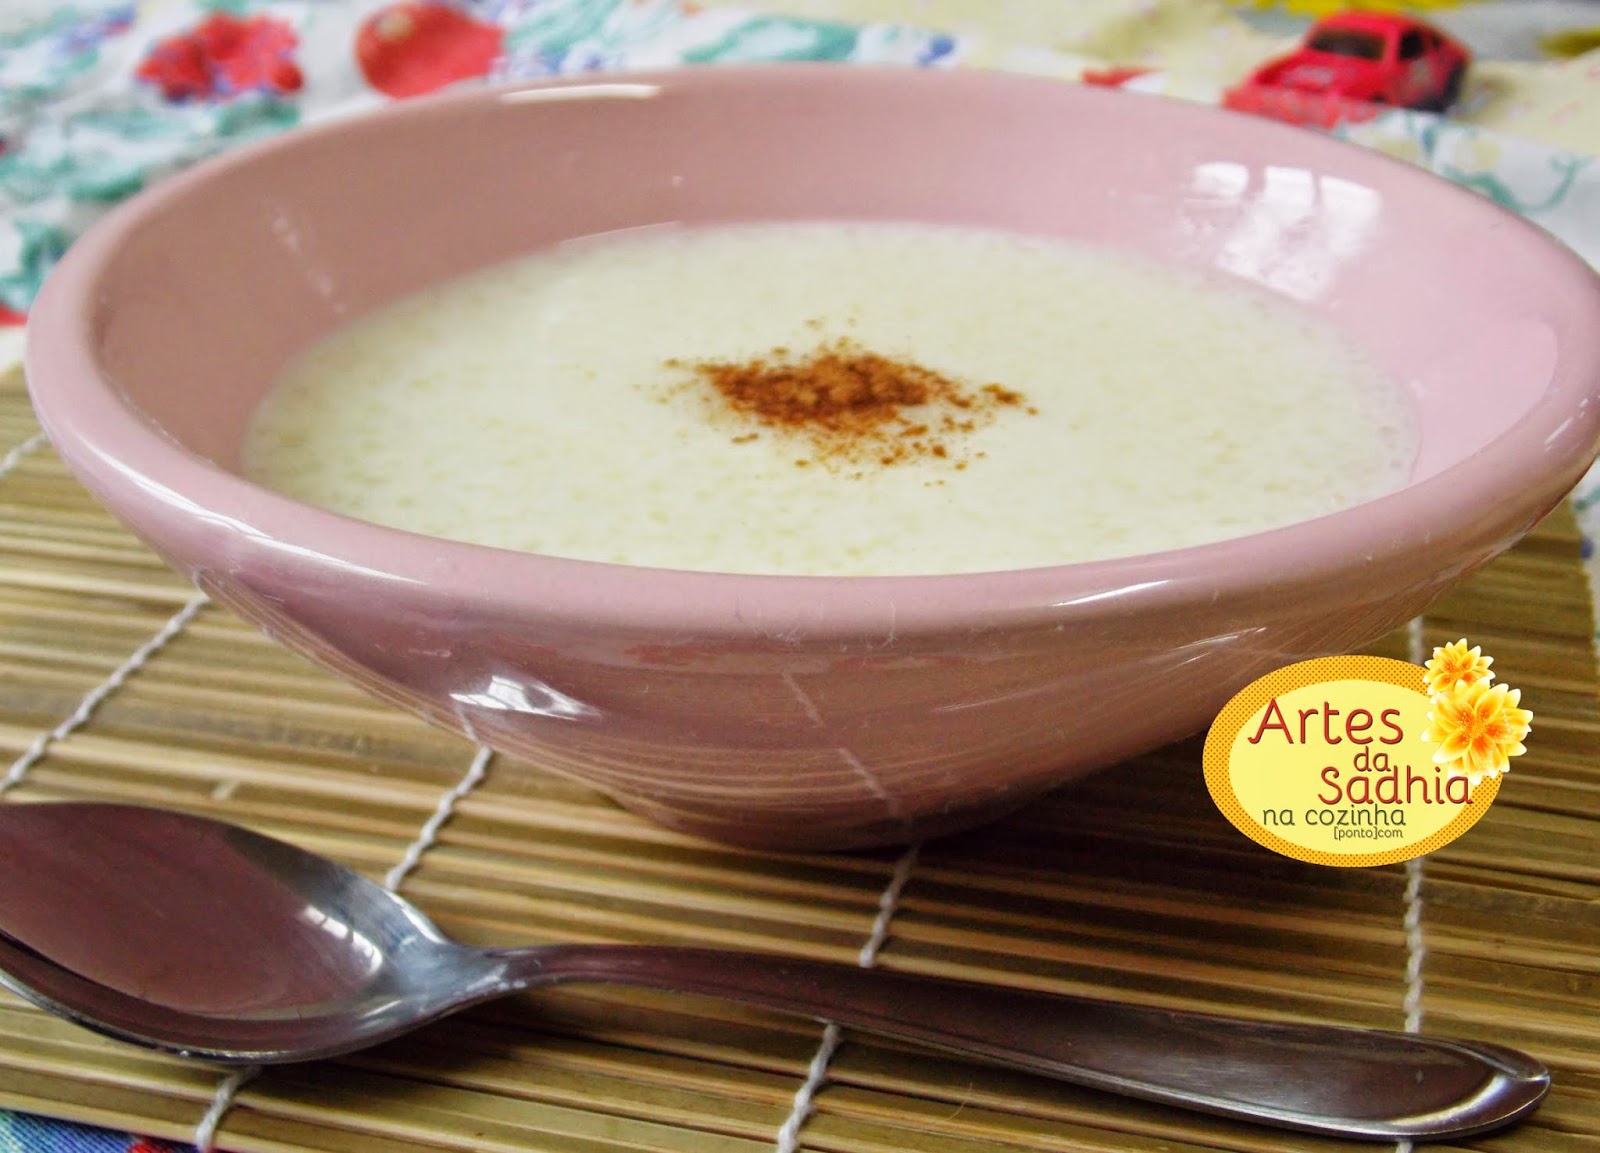 Mingau de tapioca com leite de coco | Artes da Sadhia na cozinha